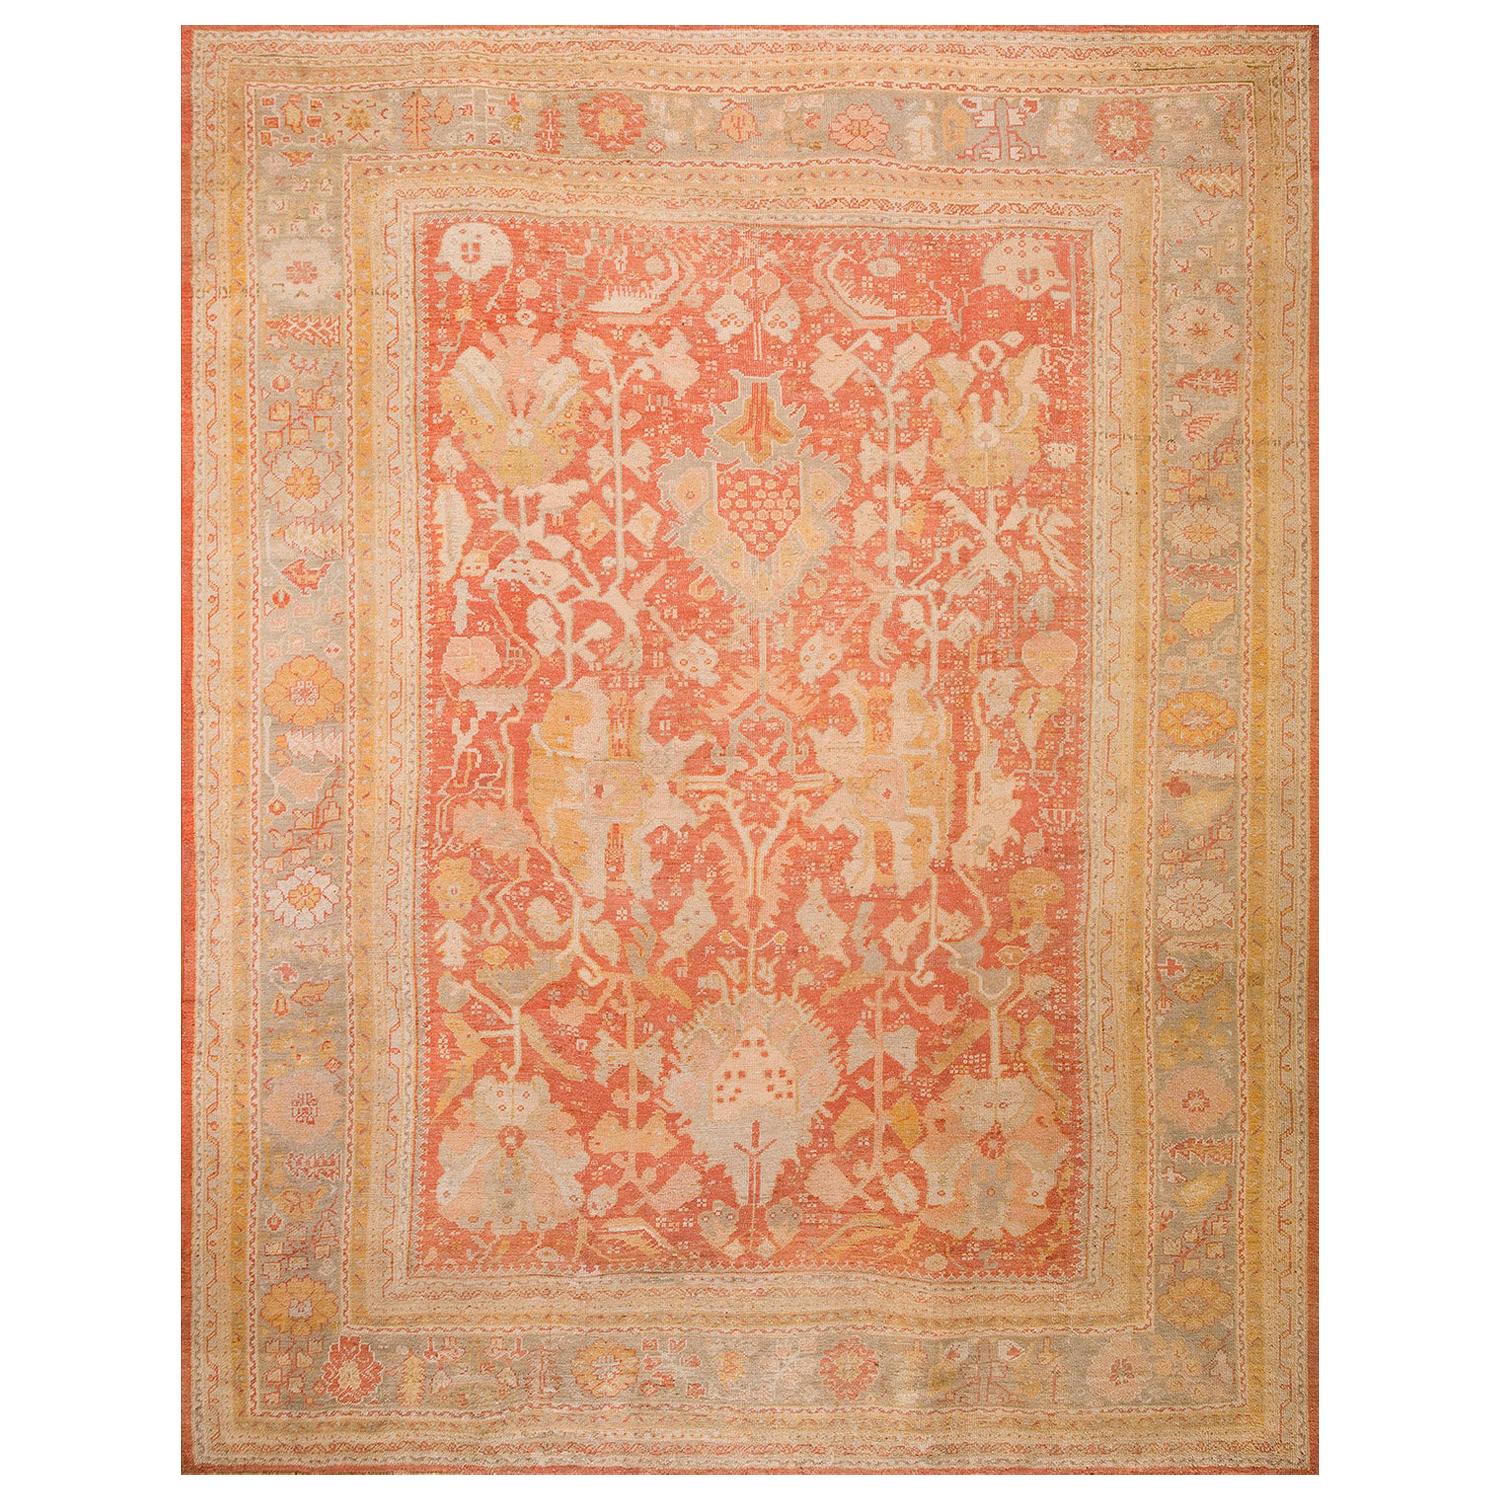 Türkischer Oushak-Teppich des 19. Jahrhunderts (12' x 15'6" - 365 x 472)